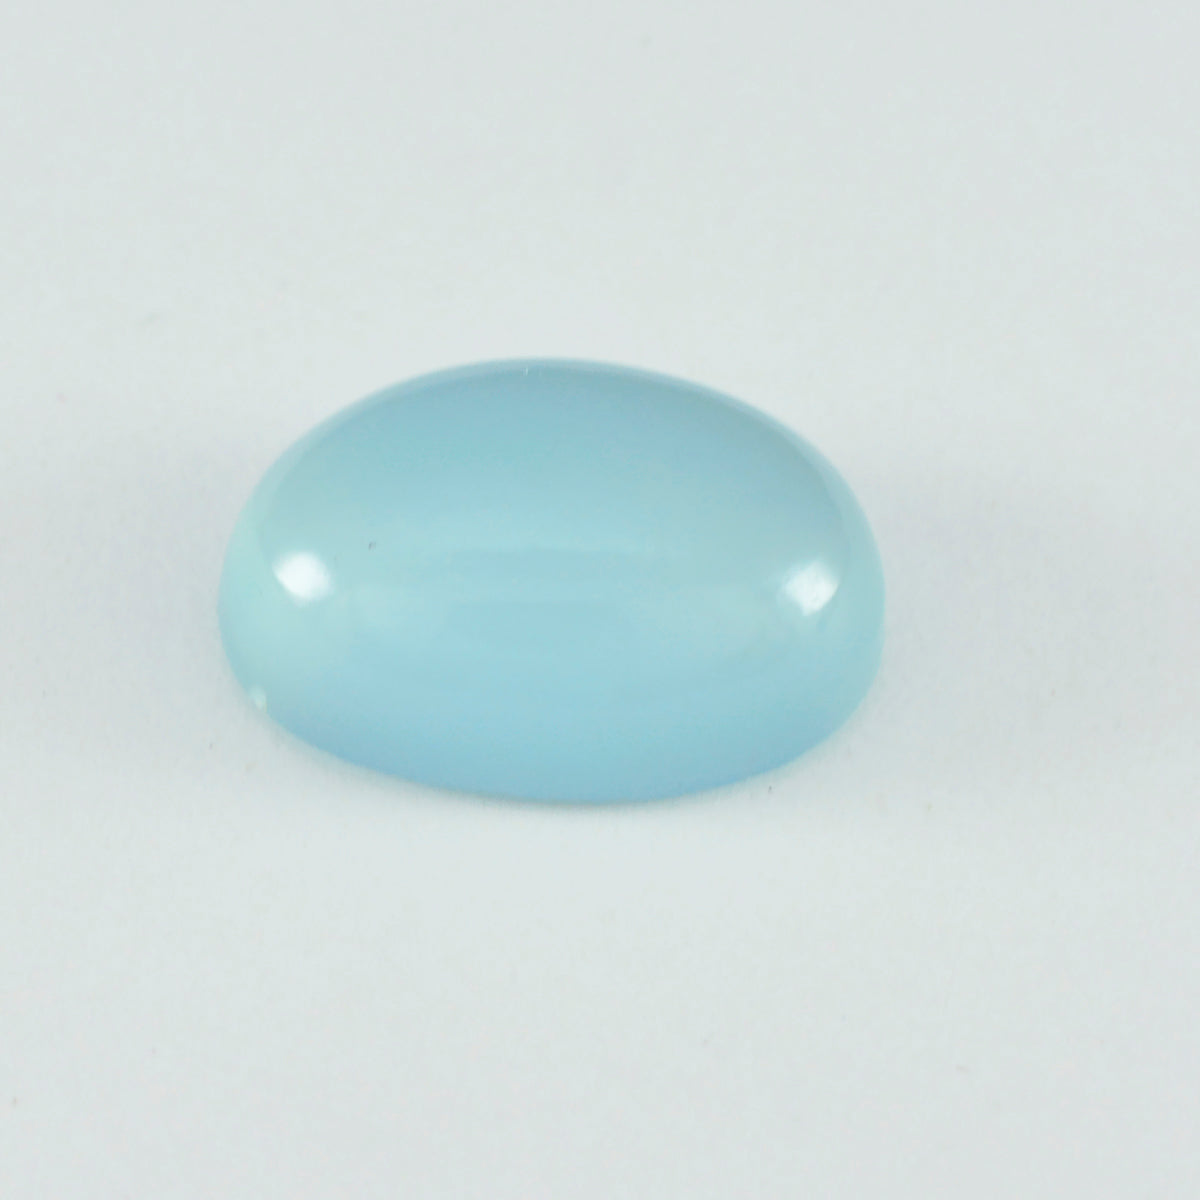 Riyogems 1 pc cabochon de calcédoine aqua 9x11 mm forme ovale belle qualité gemme en vrac